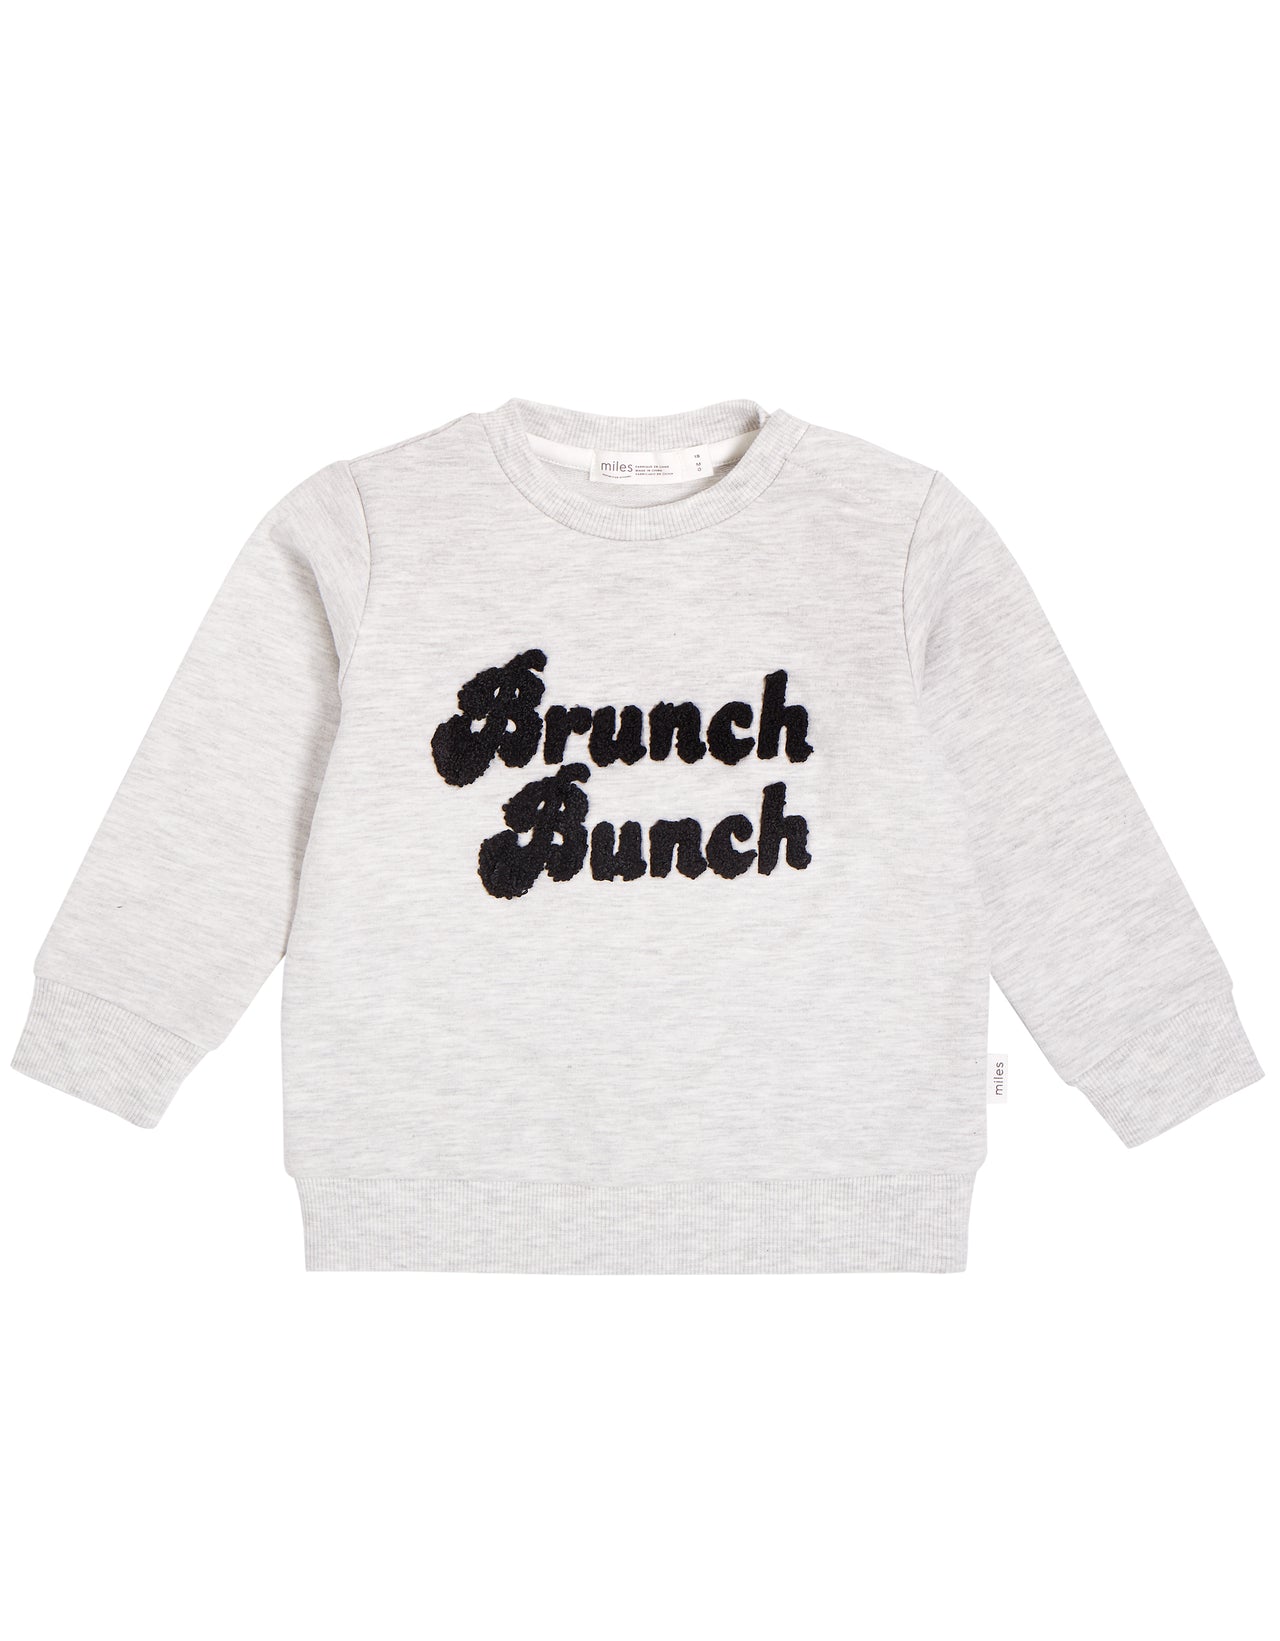 Brunch Bunch Kid's White T-Shirt